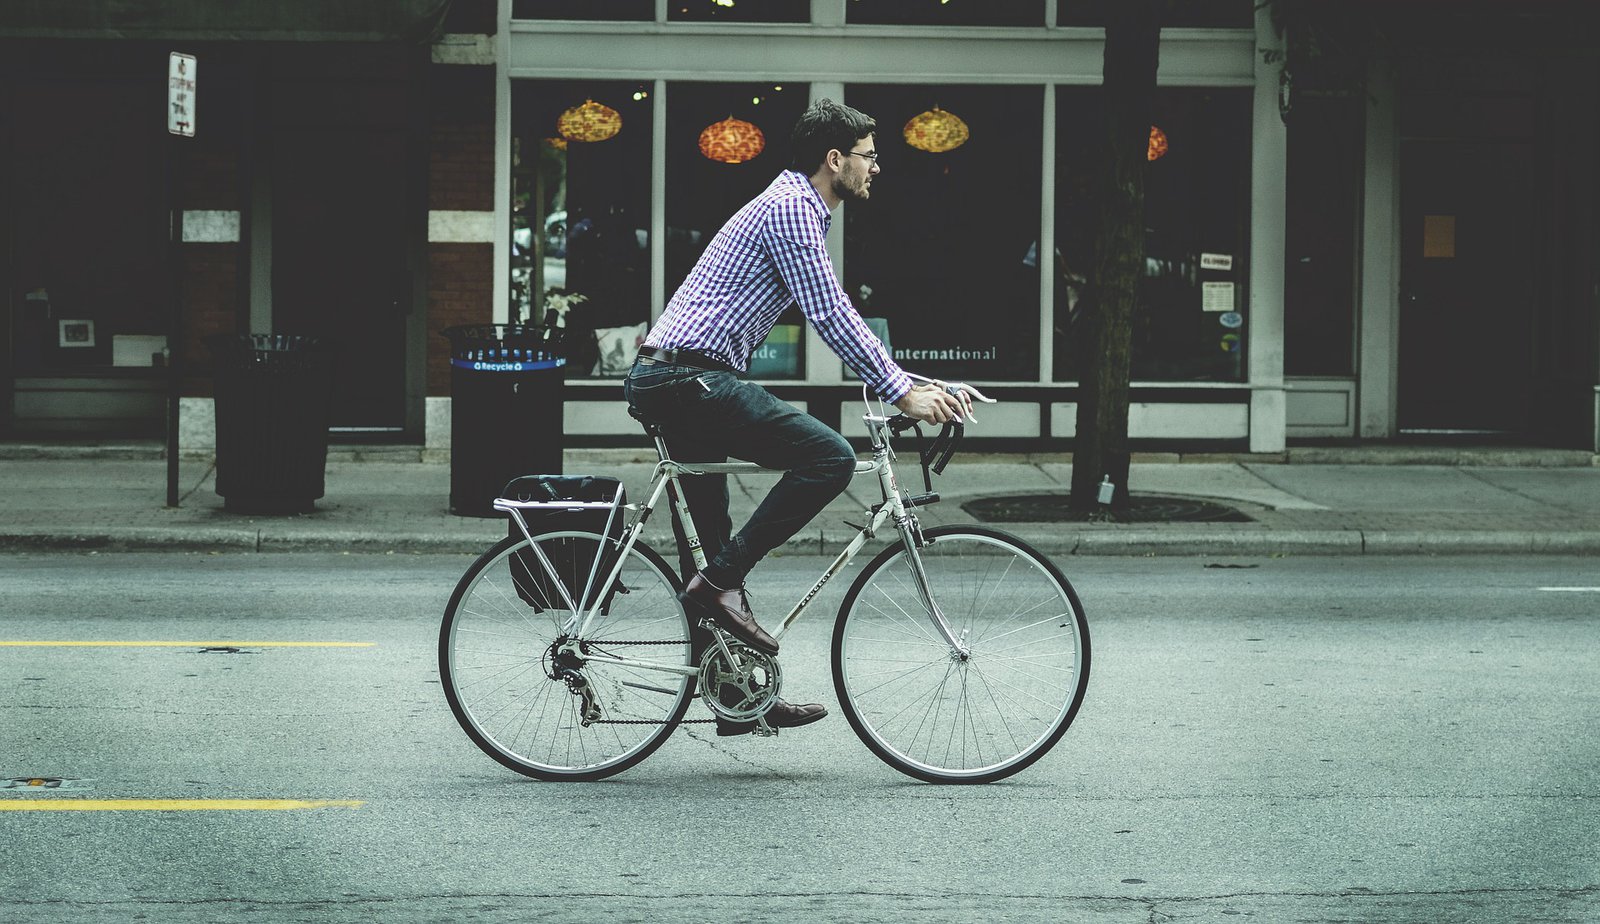 Ein Mann in kariertem Hemd, fährt auf seinem Fahrrad über eine leere Straße.